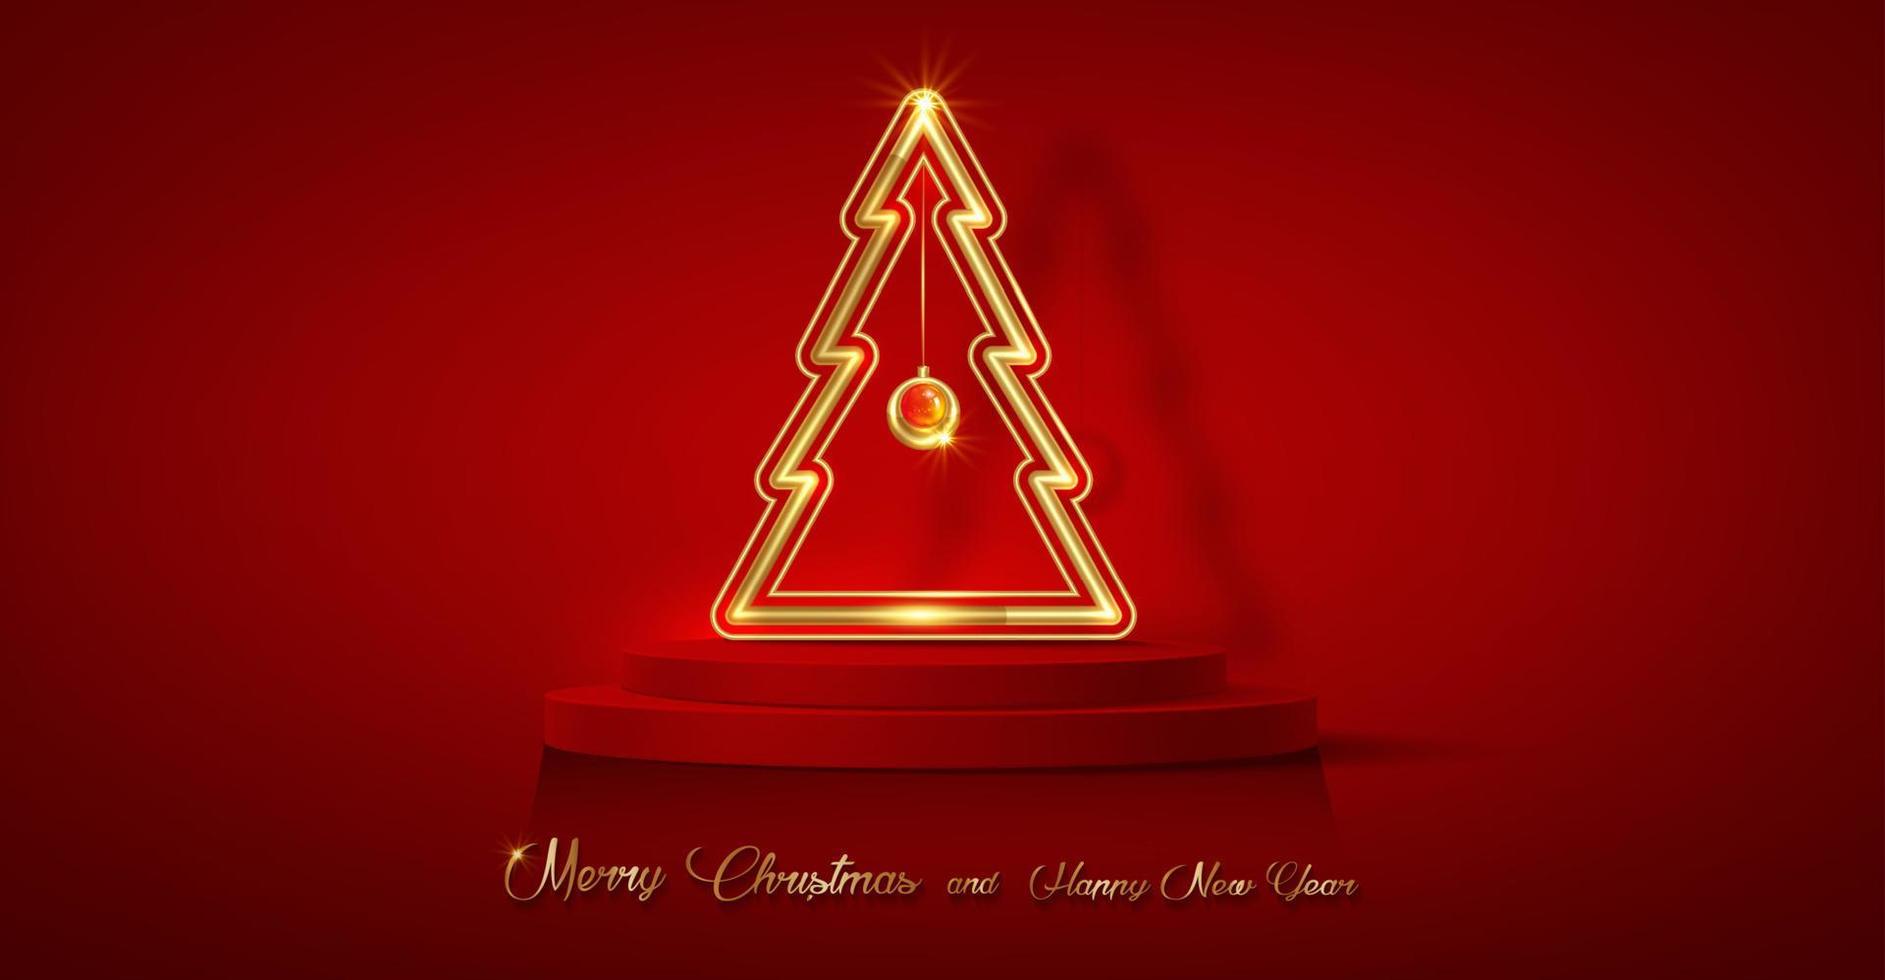 3D-Weihnachtspodium, frohes neues Jahr, goldener Neonbaum mit zylindrischer Form der Produktanzeige, goldene festliche Dekoration für die Feiertage. Luxus-Vorlage, Vektor isoliert auf rotem Hintergrund